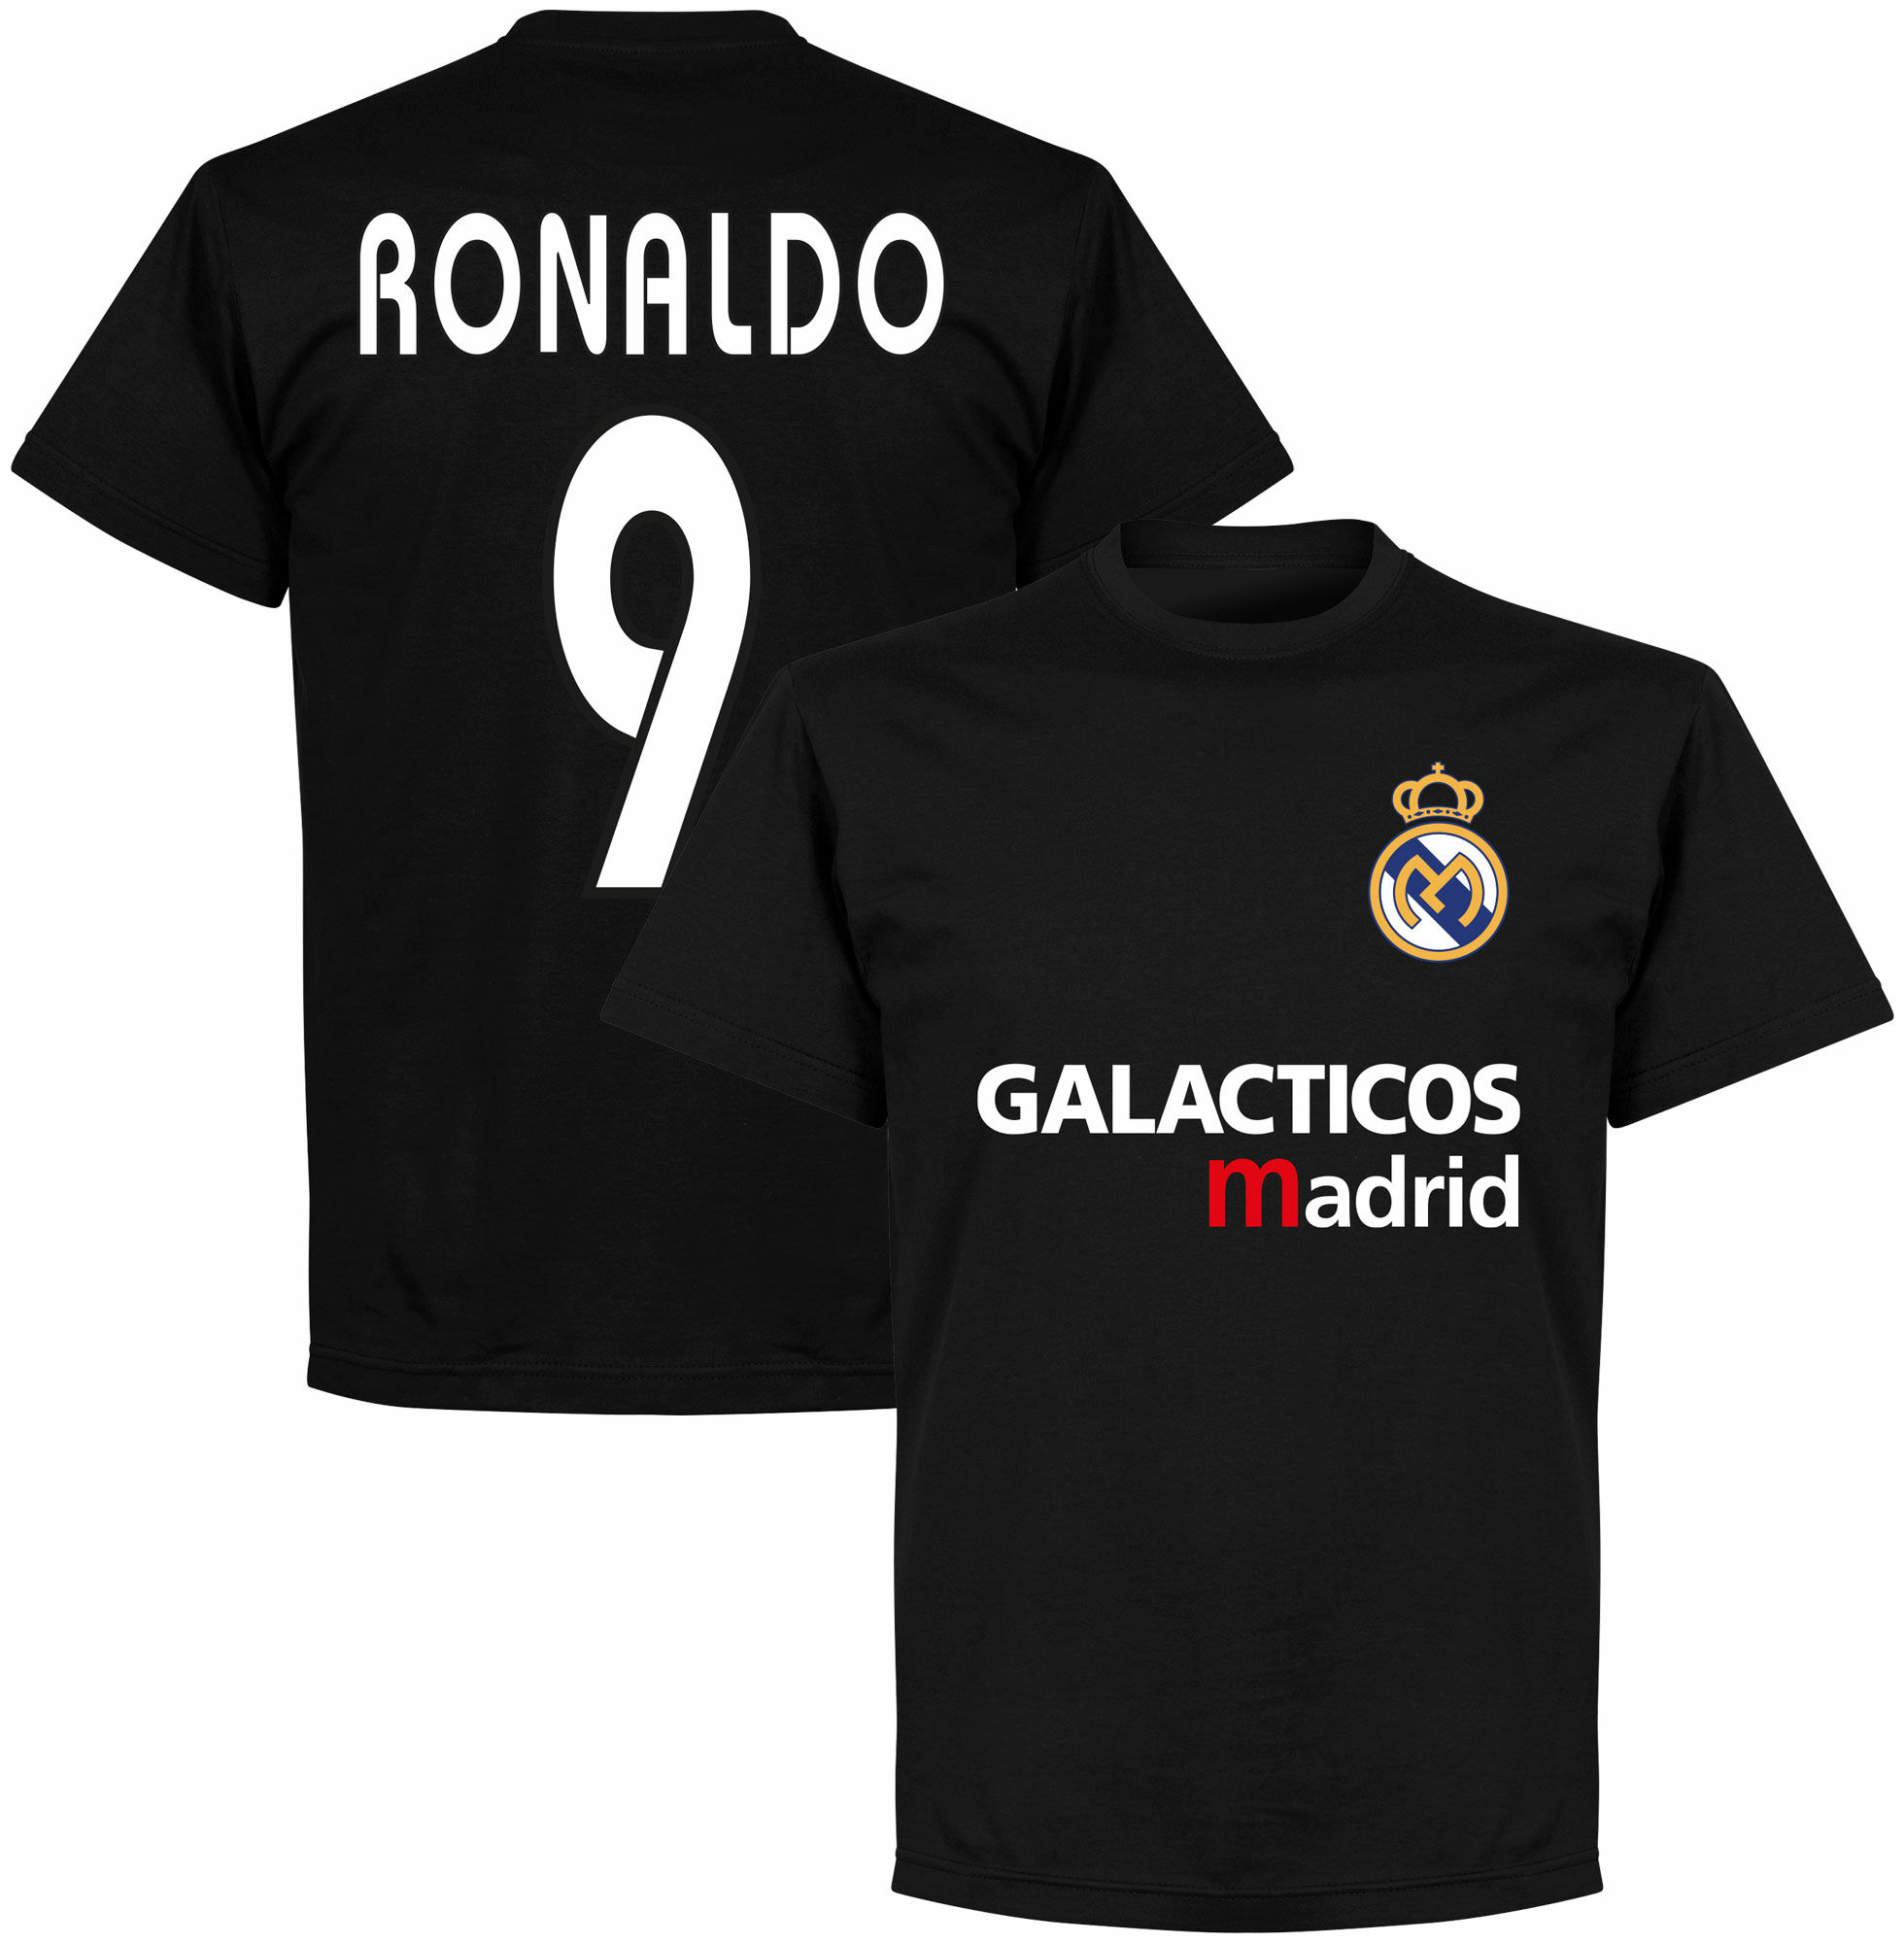 Real Madrid - Tričko "Galácticos Madrid" - Ronaldo, číslo 9, černé